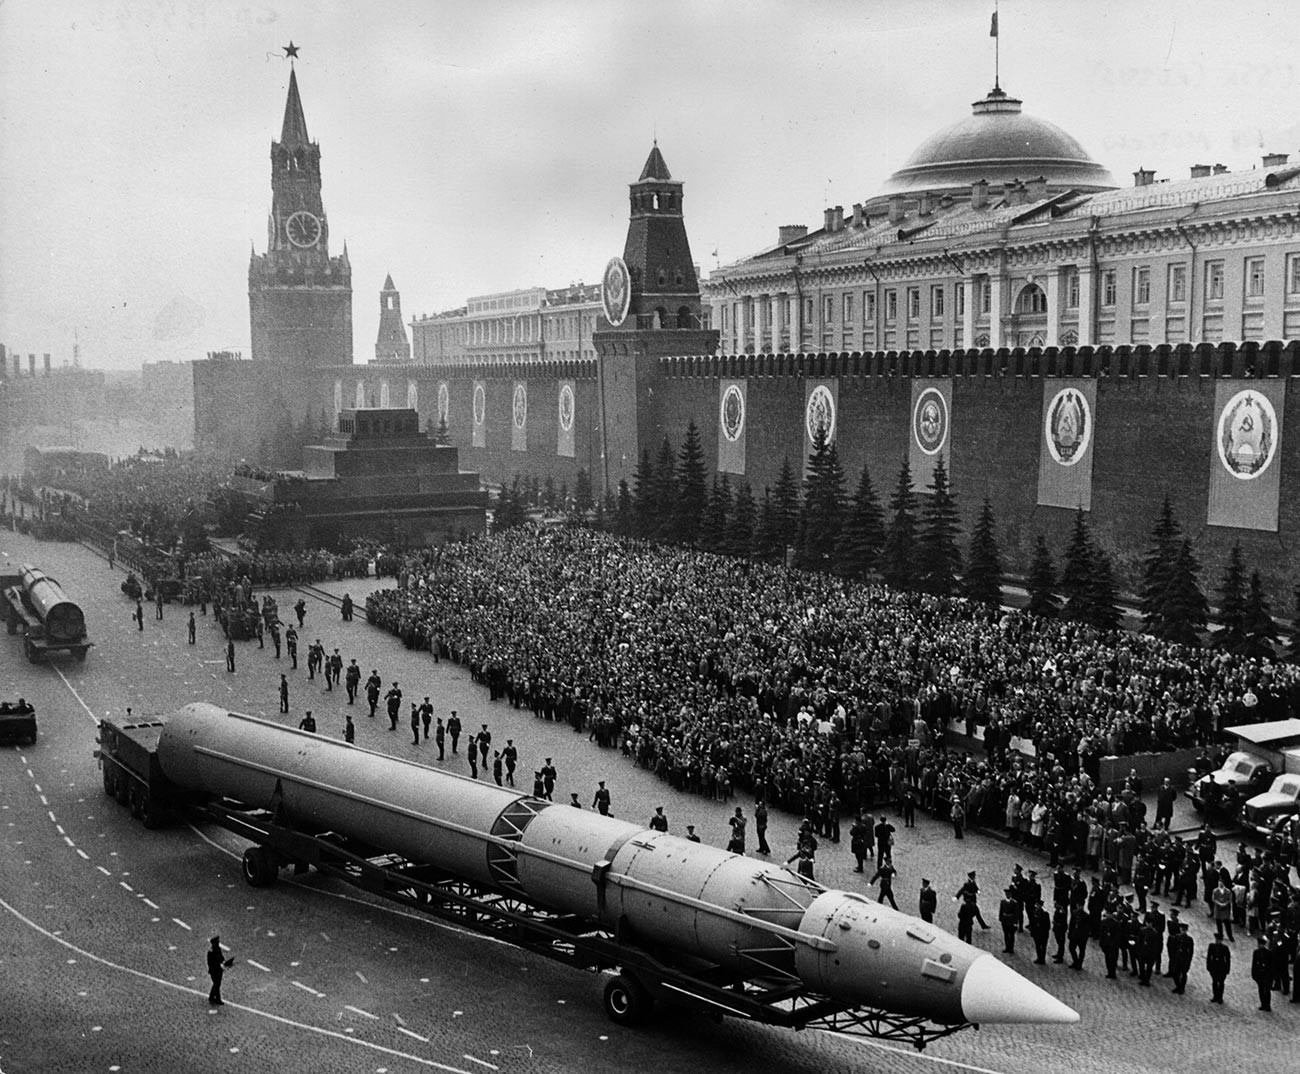 Míssil intercontinental russo cruzando a Praça Vermelha durante o desfile militar em Moscou que marcava o 20º aniversário do fim da guerra na Europa